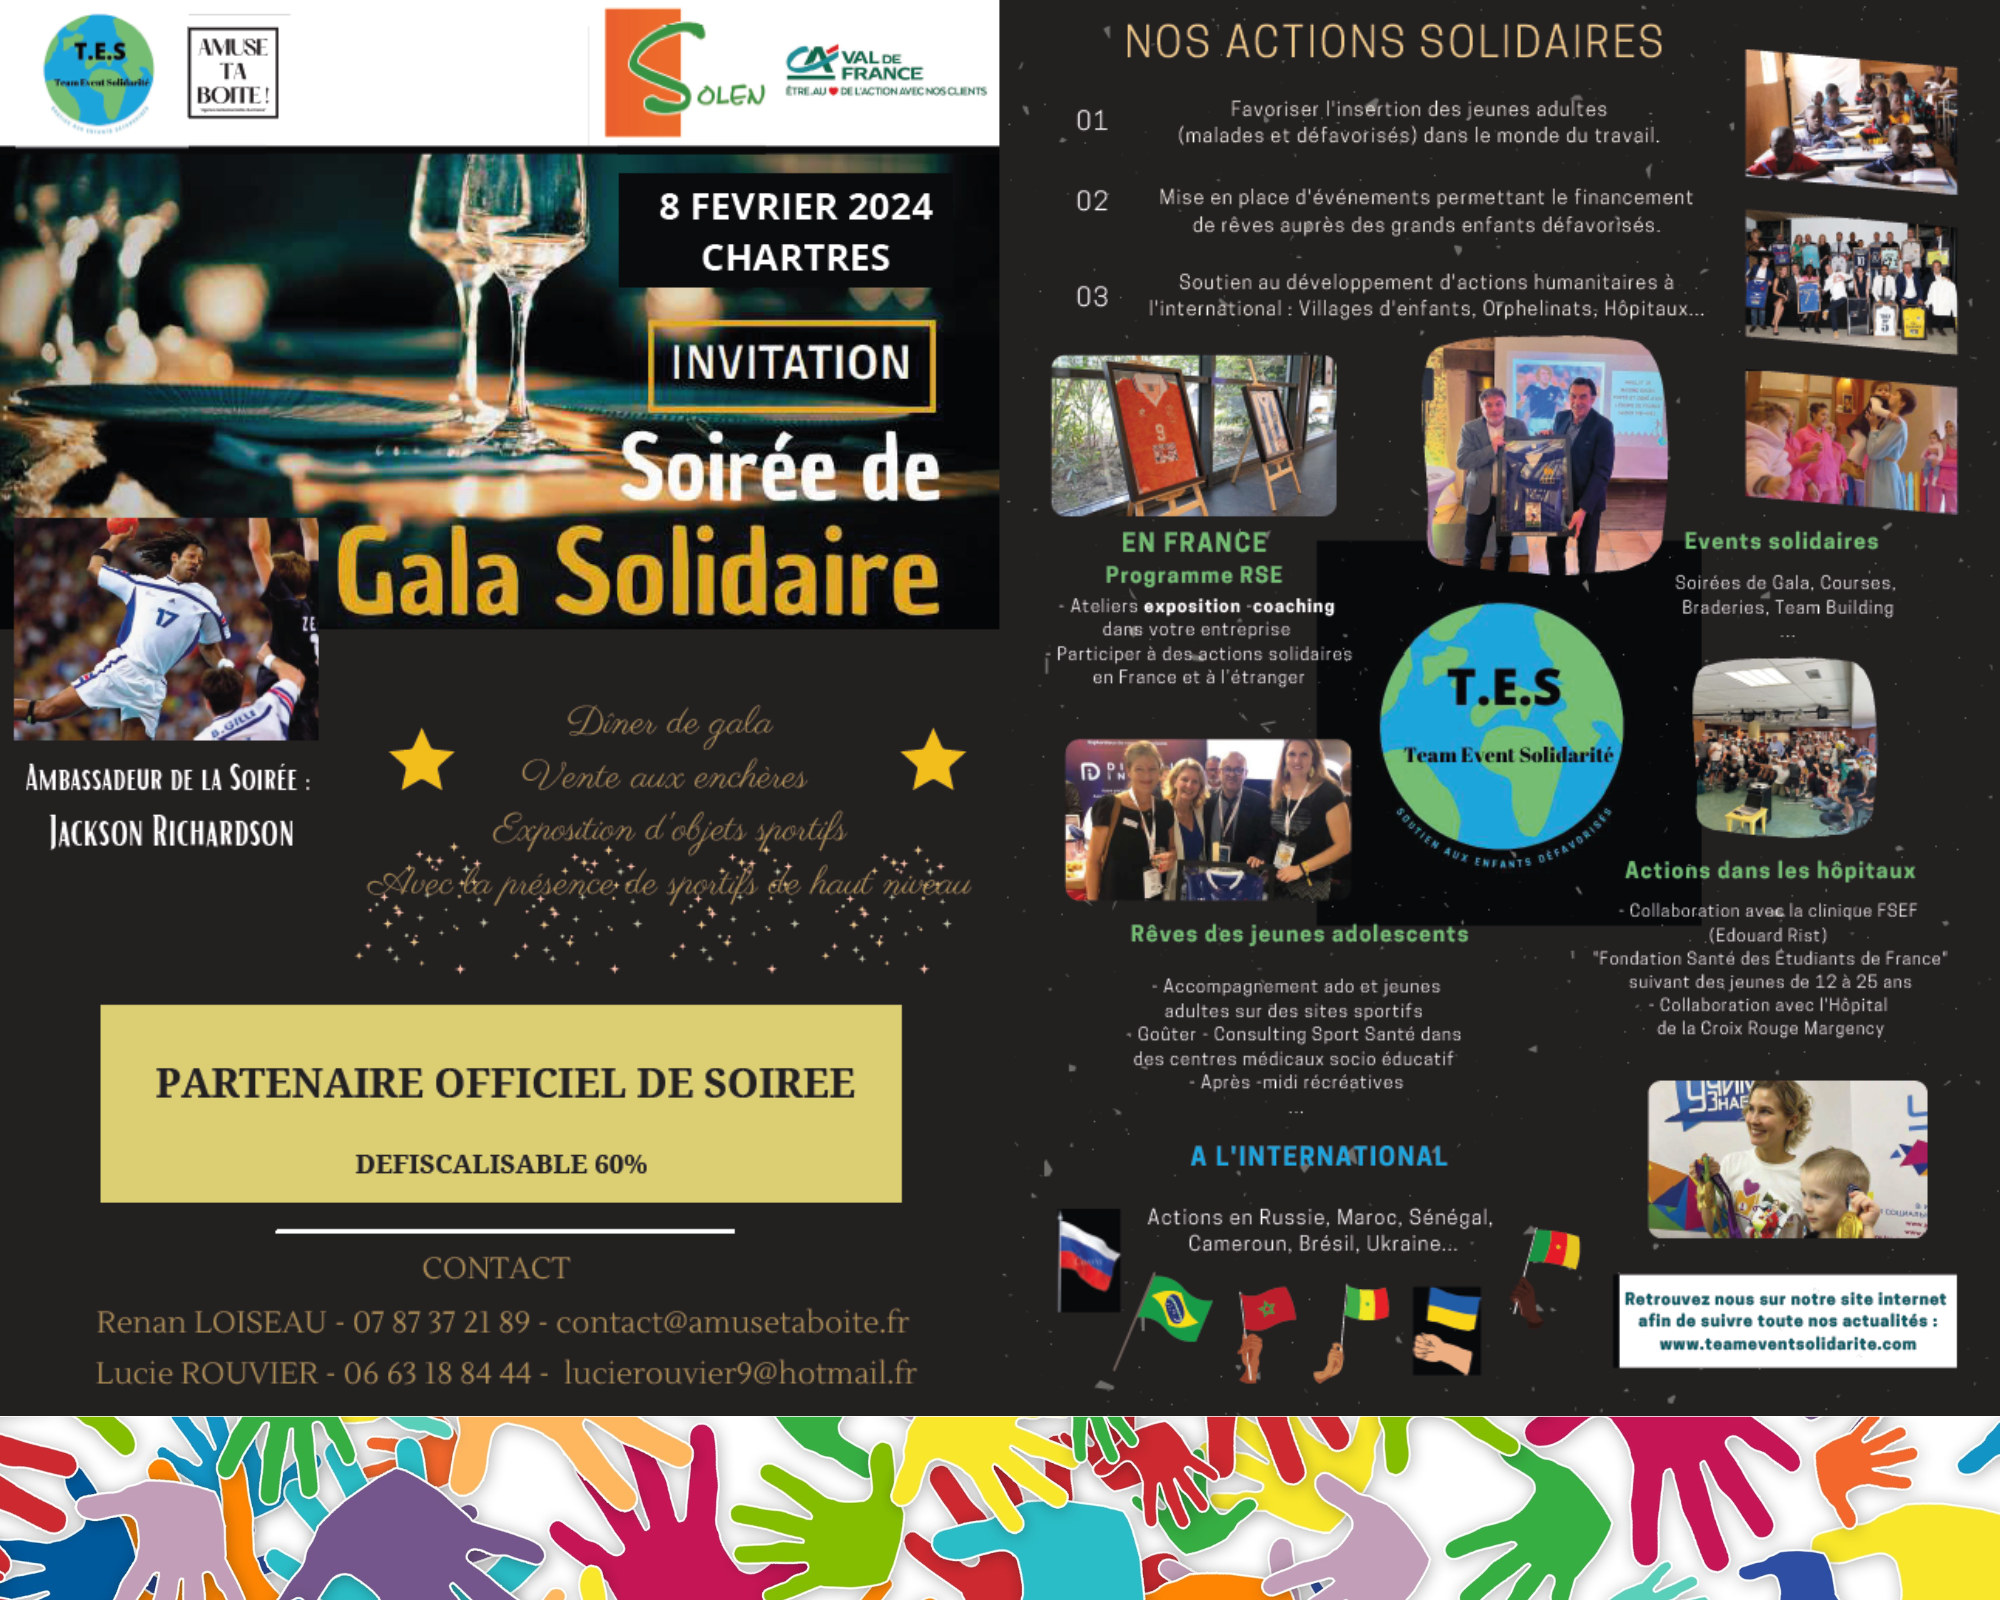 2ème Gala Solidaire au profit des enfants défavorisés